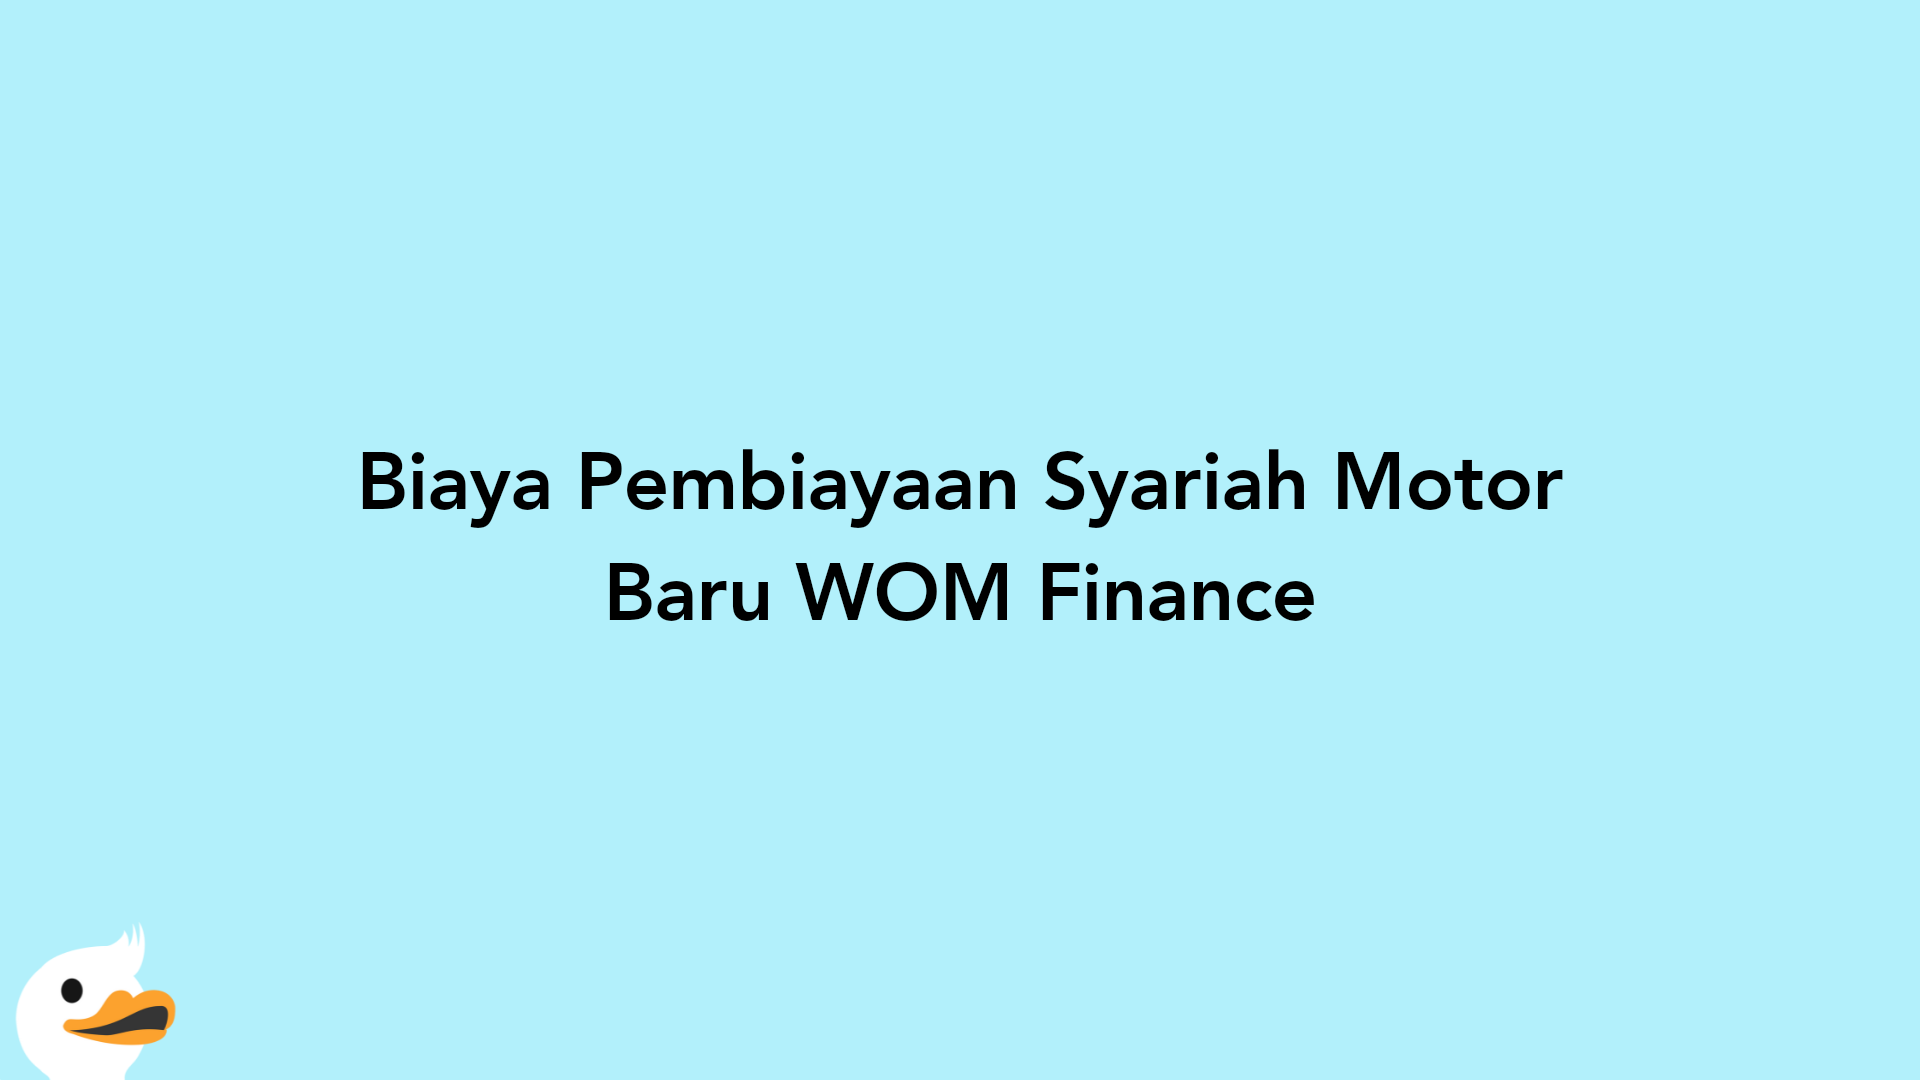 Biaya Pembiayaan Syariah Motor Baru WOM Finance